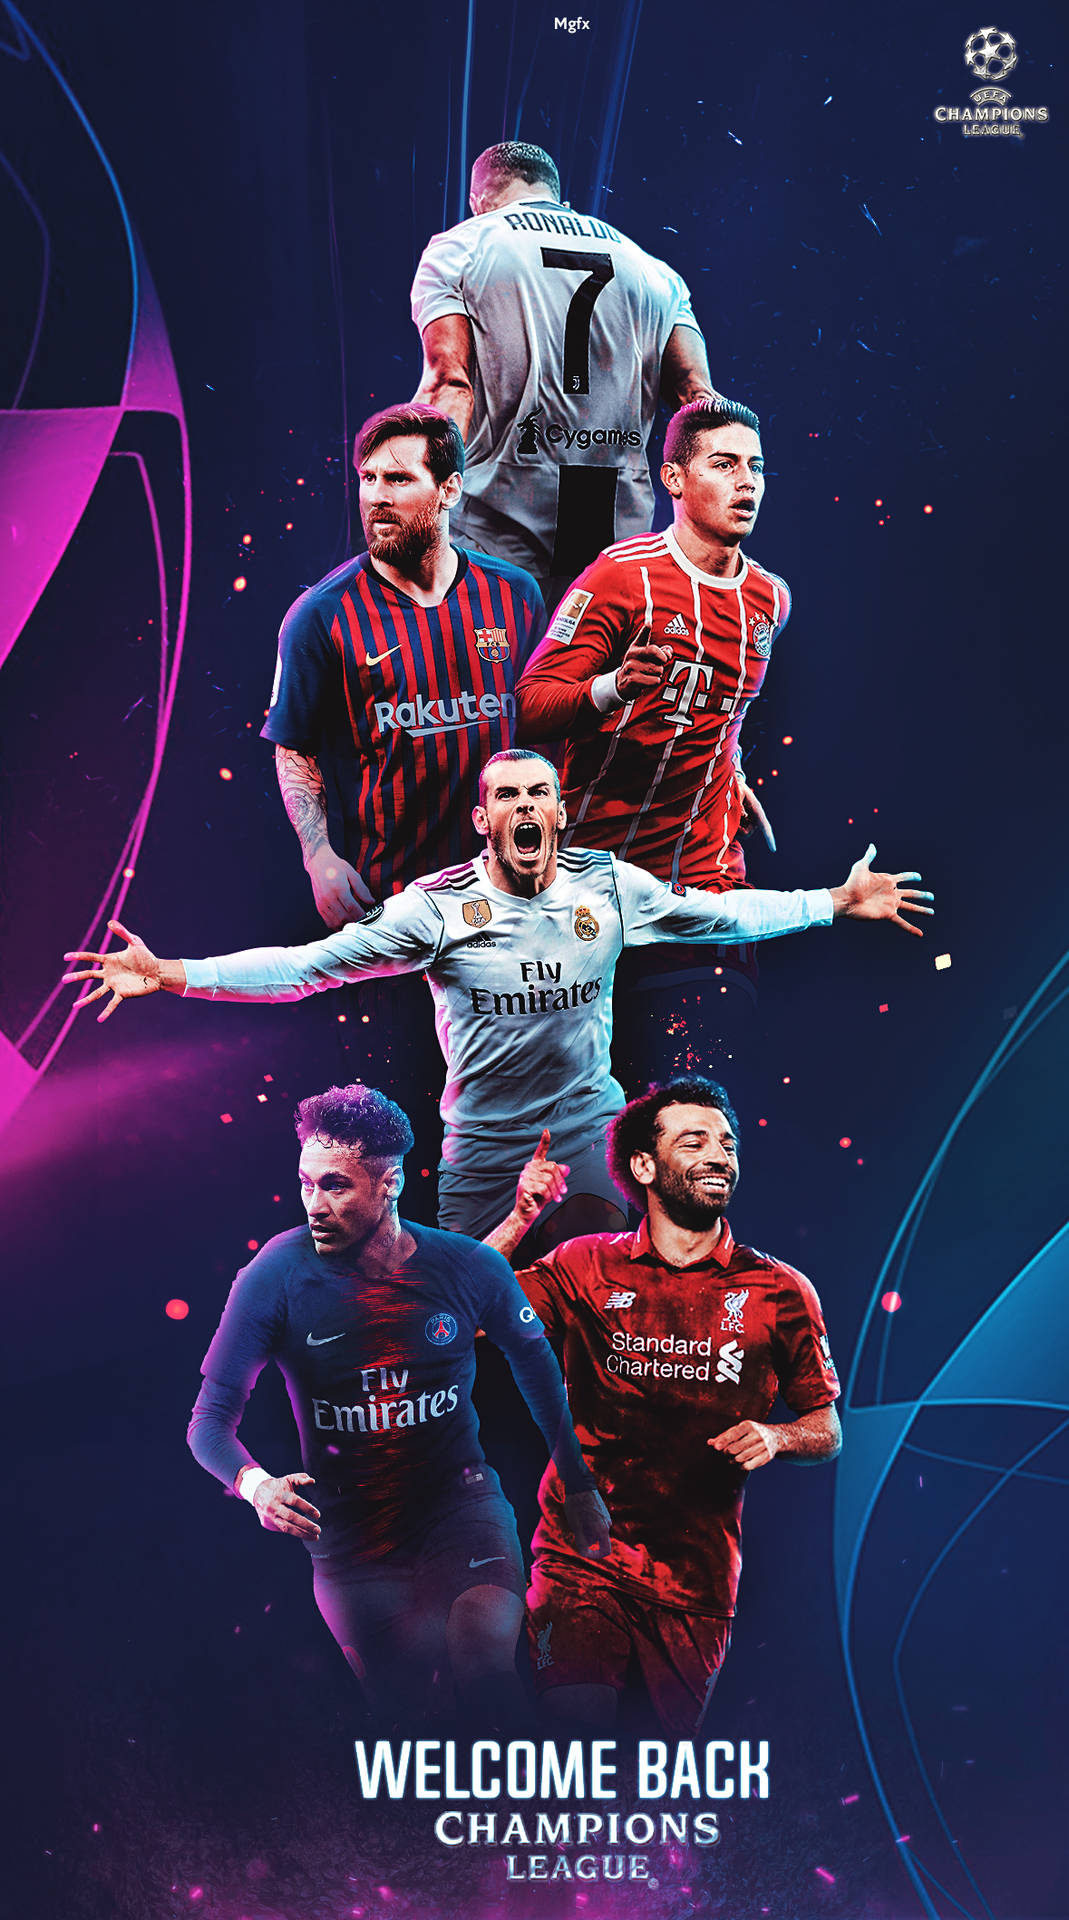 Willkommenzurück Champions League Poster Wallpaper